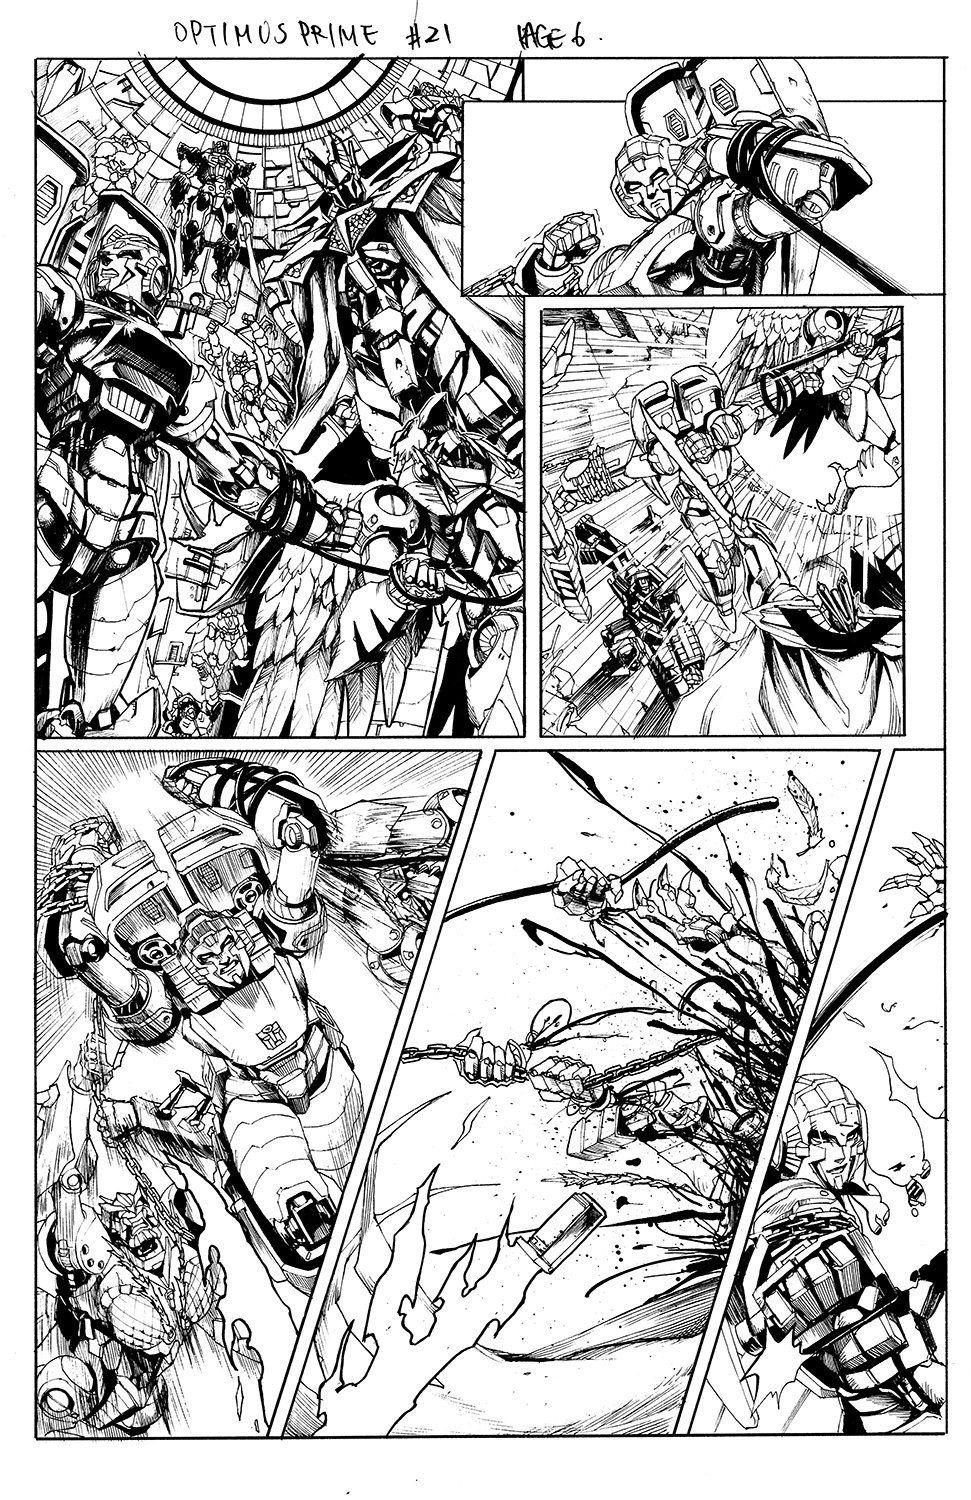 Optimus Prime #21 Page 06